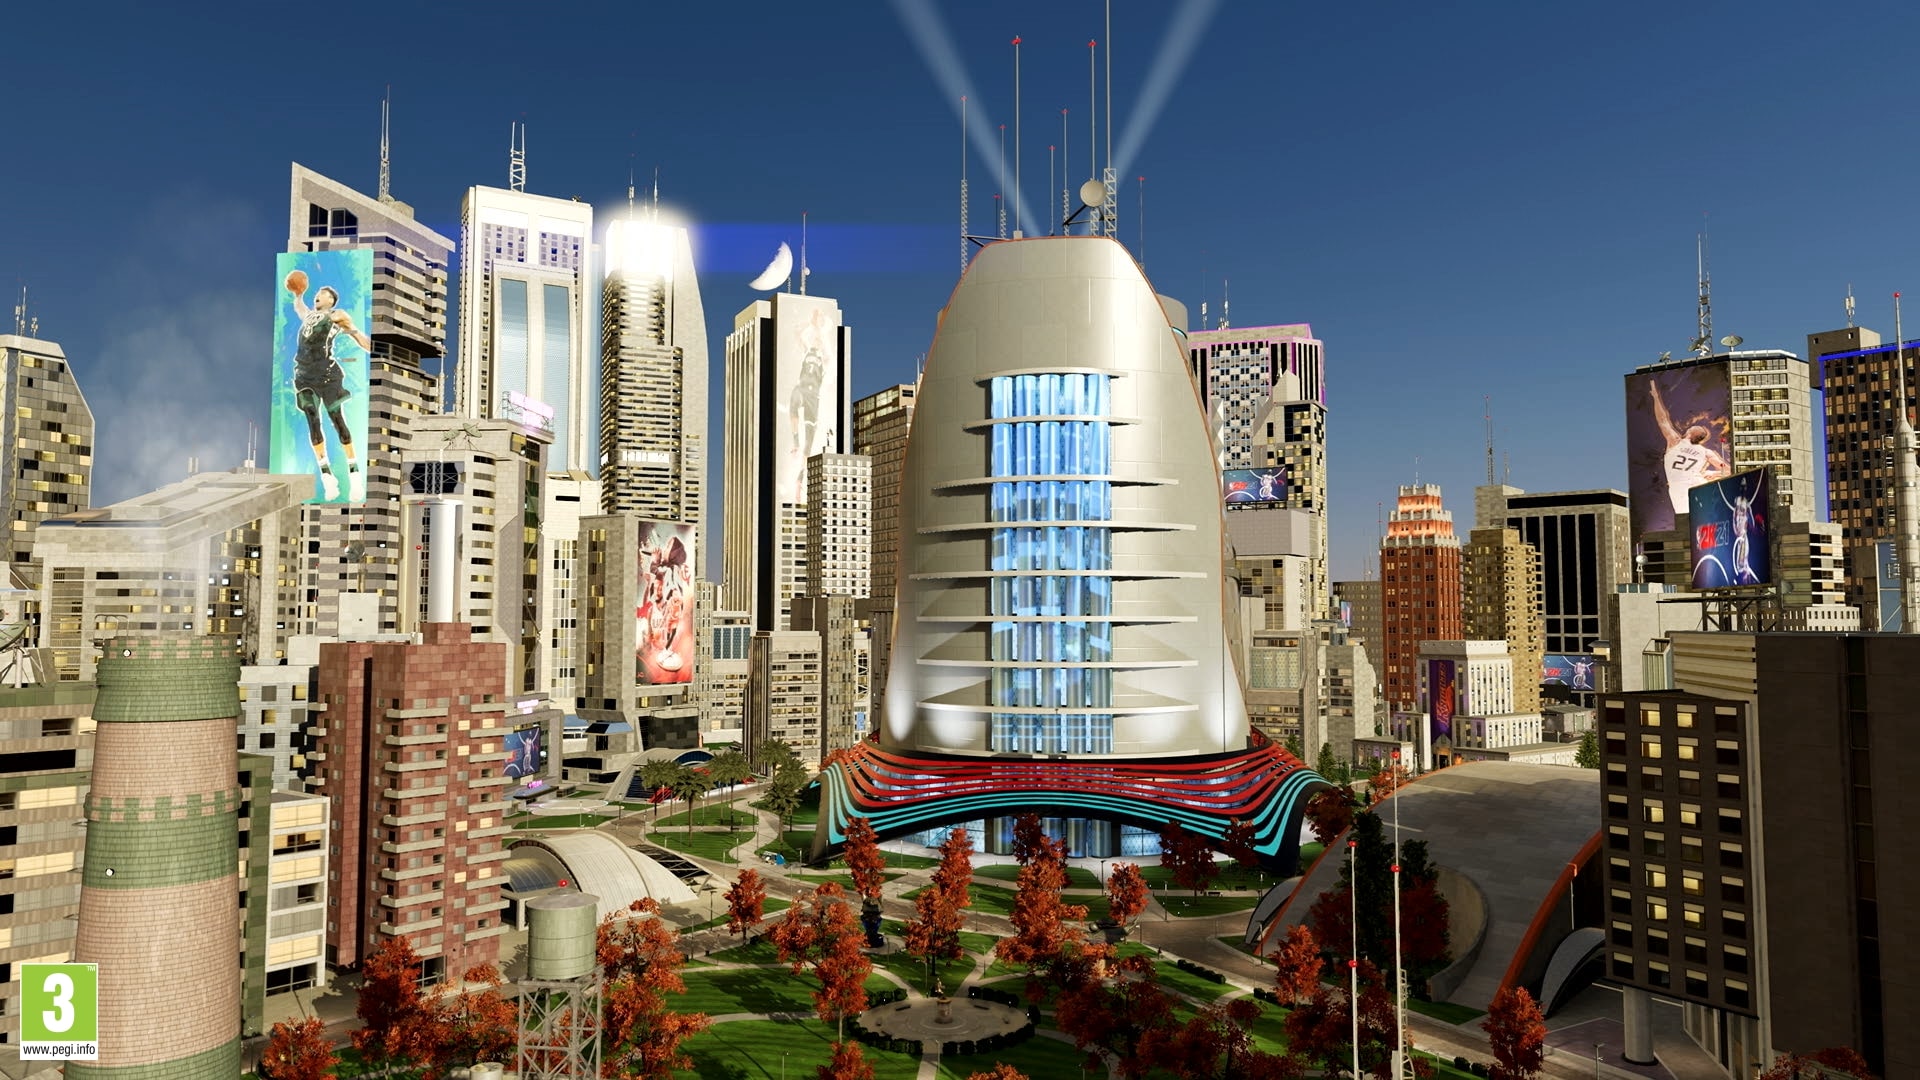 Nba 2k21 Presenta La Ciudad El Nuevo Barrio Exclusivo De Ps5 Y Xbox Series X S Hobbyconsolas Juegos